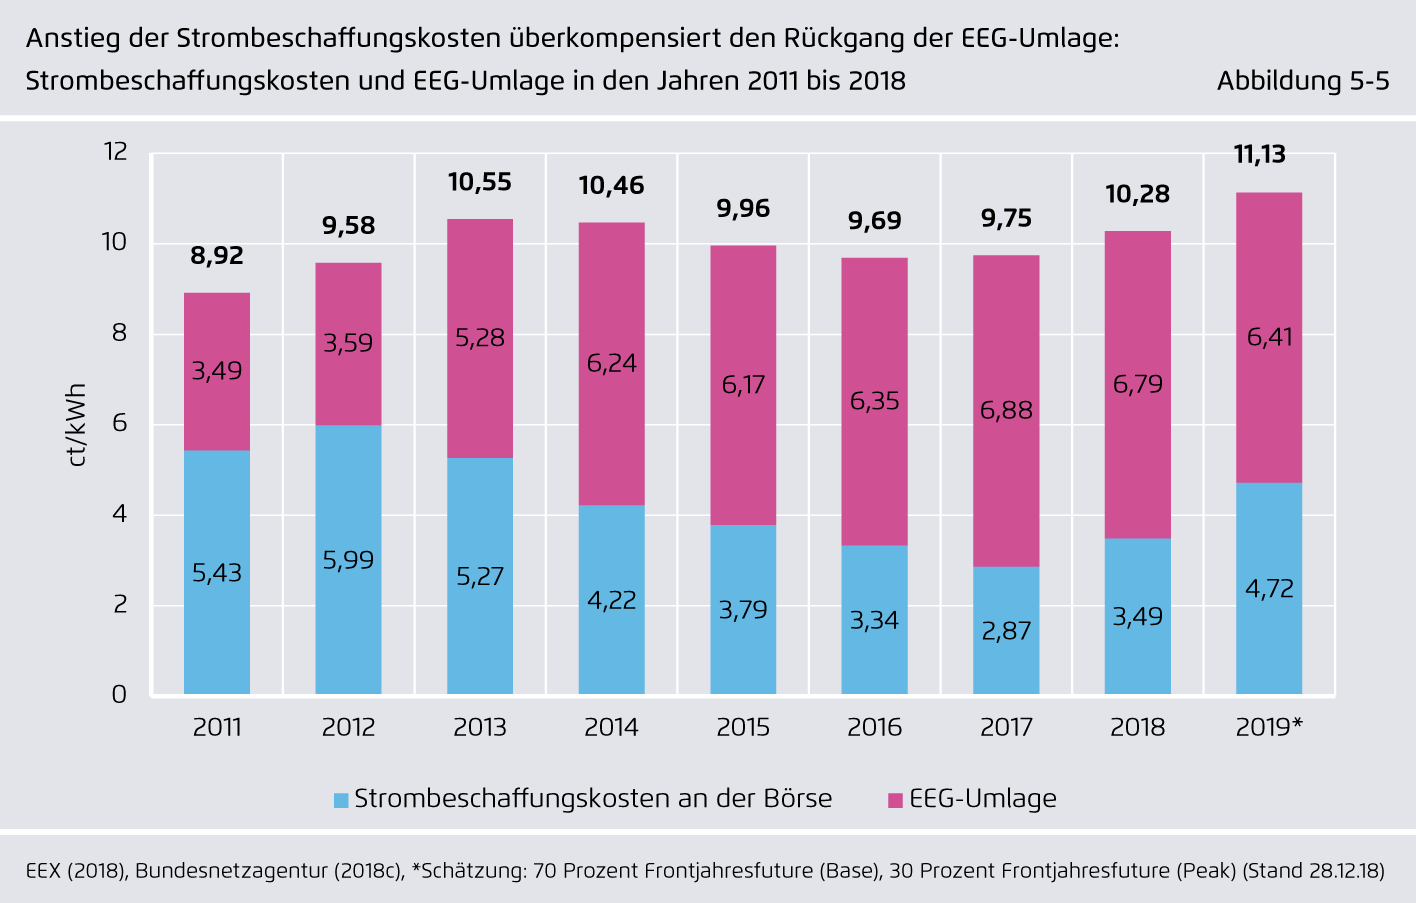 Preview for Anstieg der Strombeschaffungskosten überkompensiert den Rückgang der EEG-Umlage: Strombeschaffungskosten und EEG-Umlage in den Jahren 2011 bis 2018